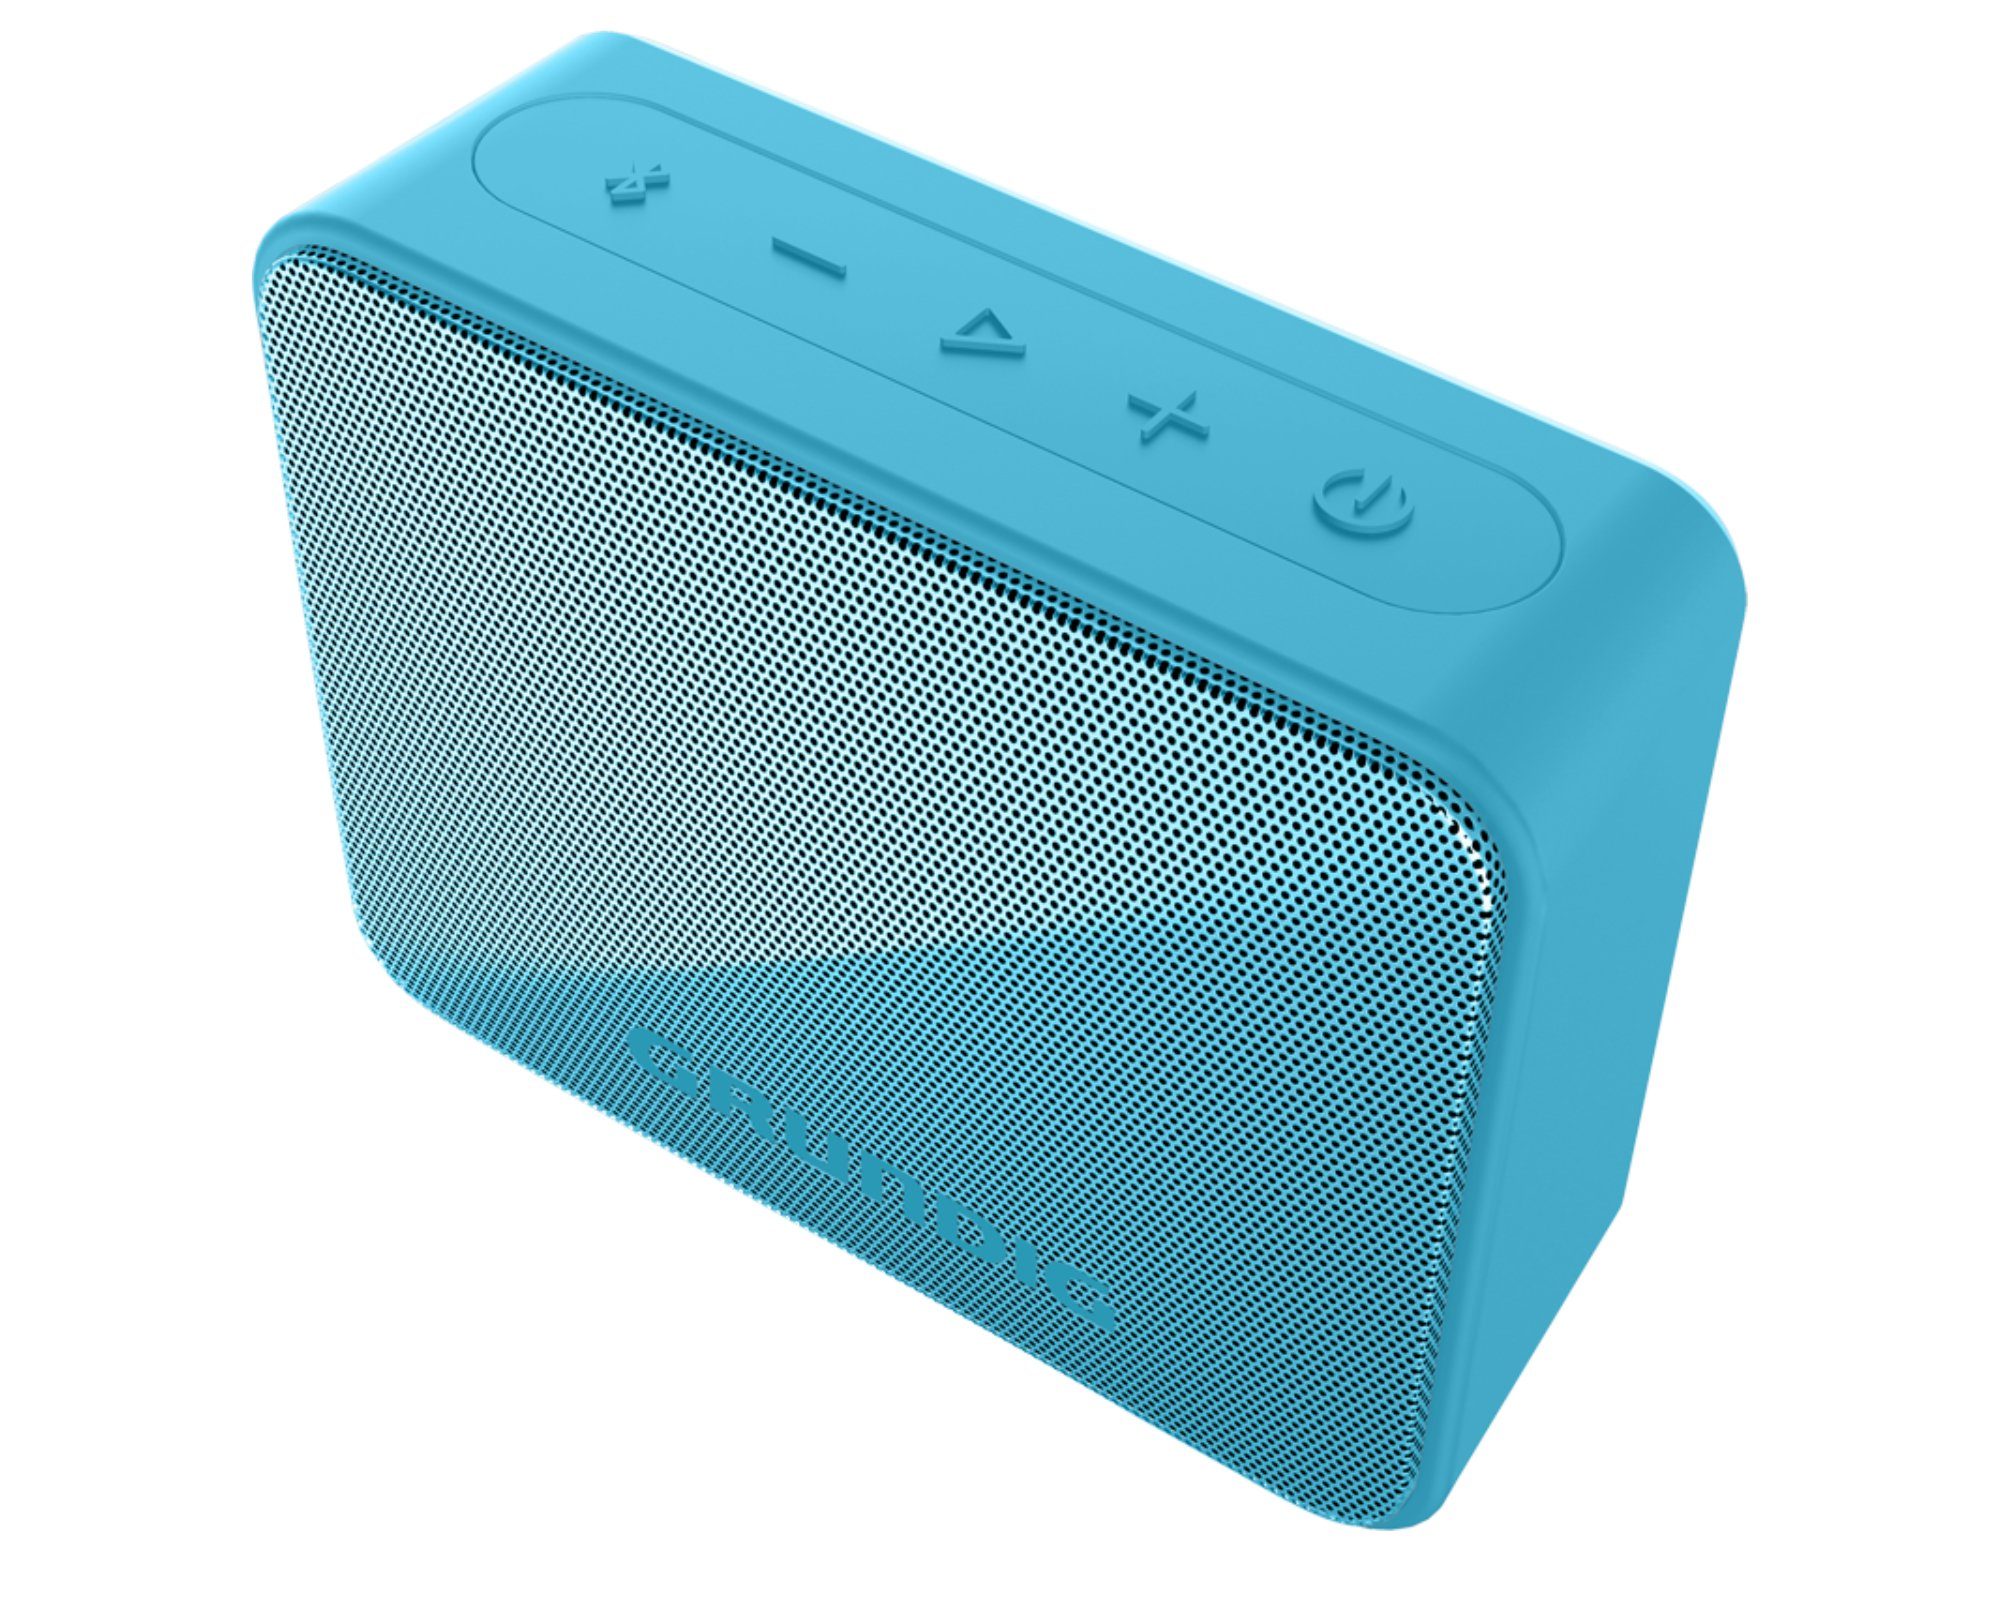 Grundig GBT SOLO Bluetooth-Lautsprecher (Bluetooth, 3.5 W, IPX5, integrierter Passivradiator, Reichweite bis zu 30 Meter) Blau